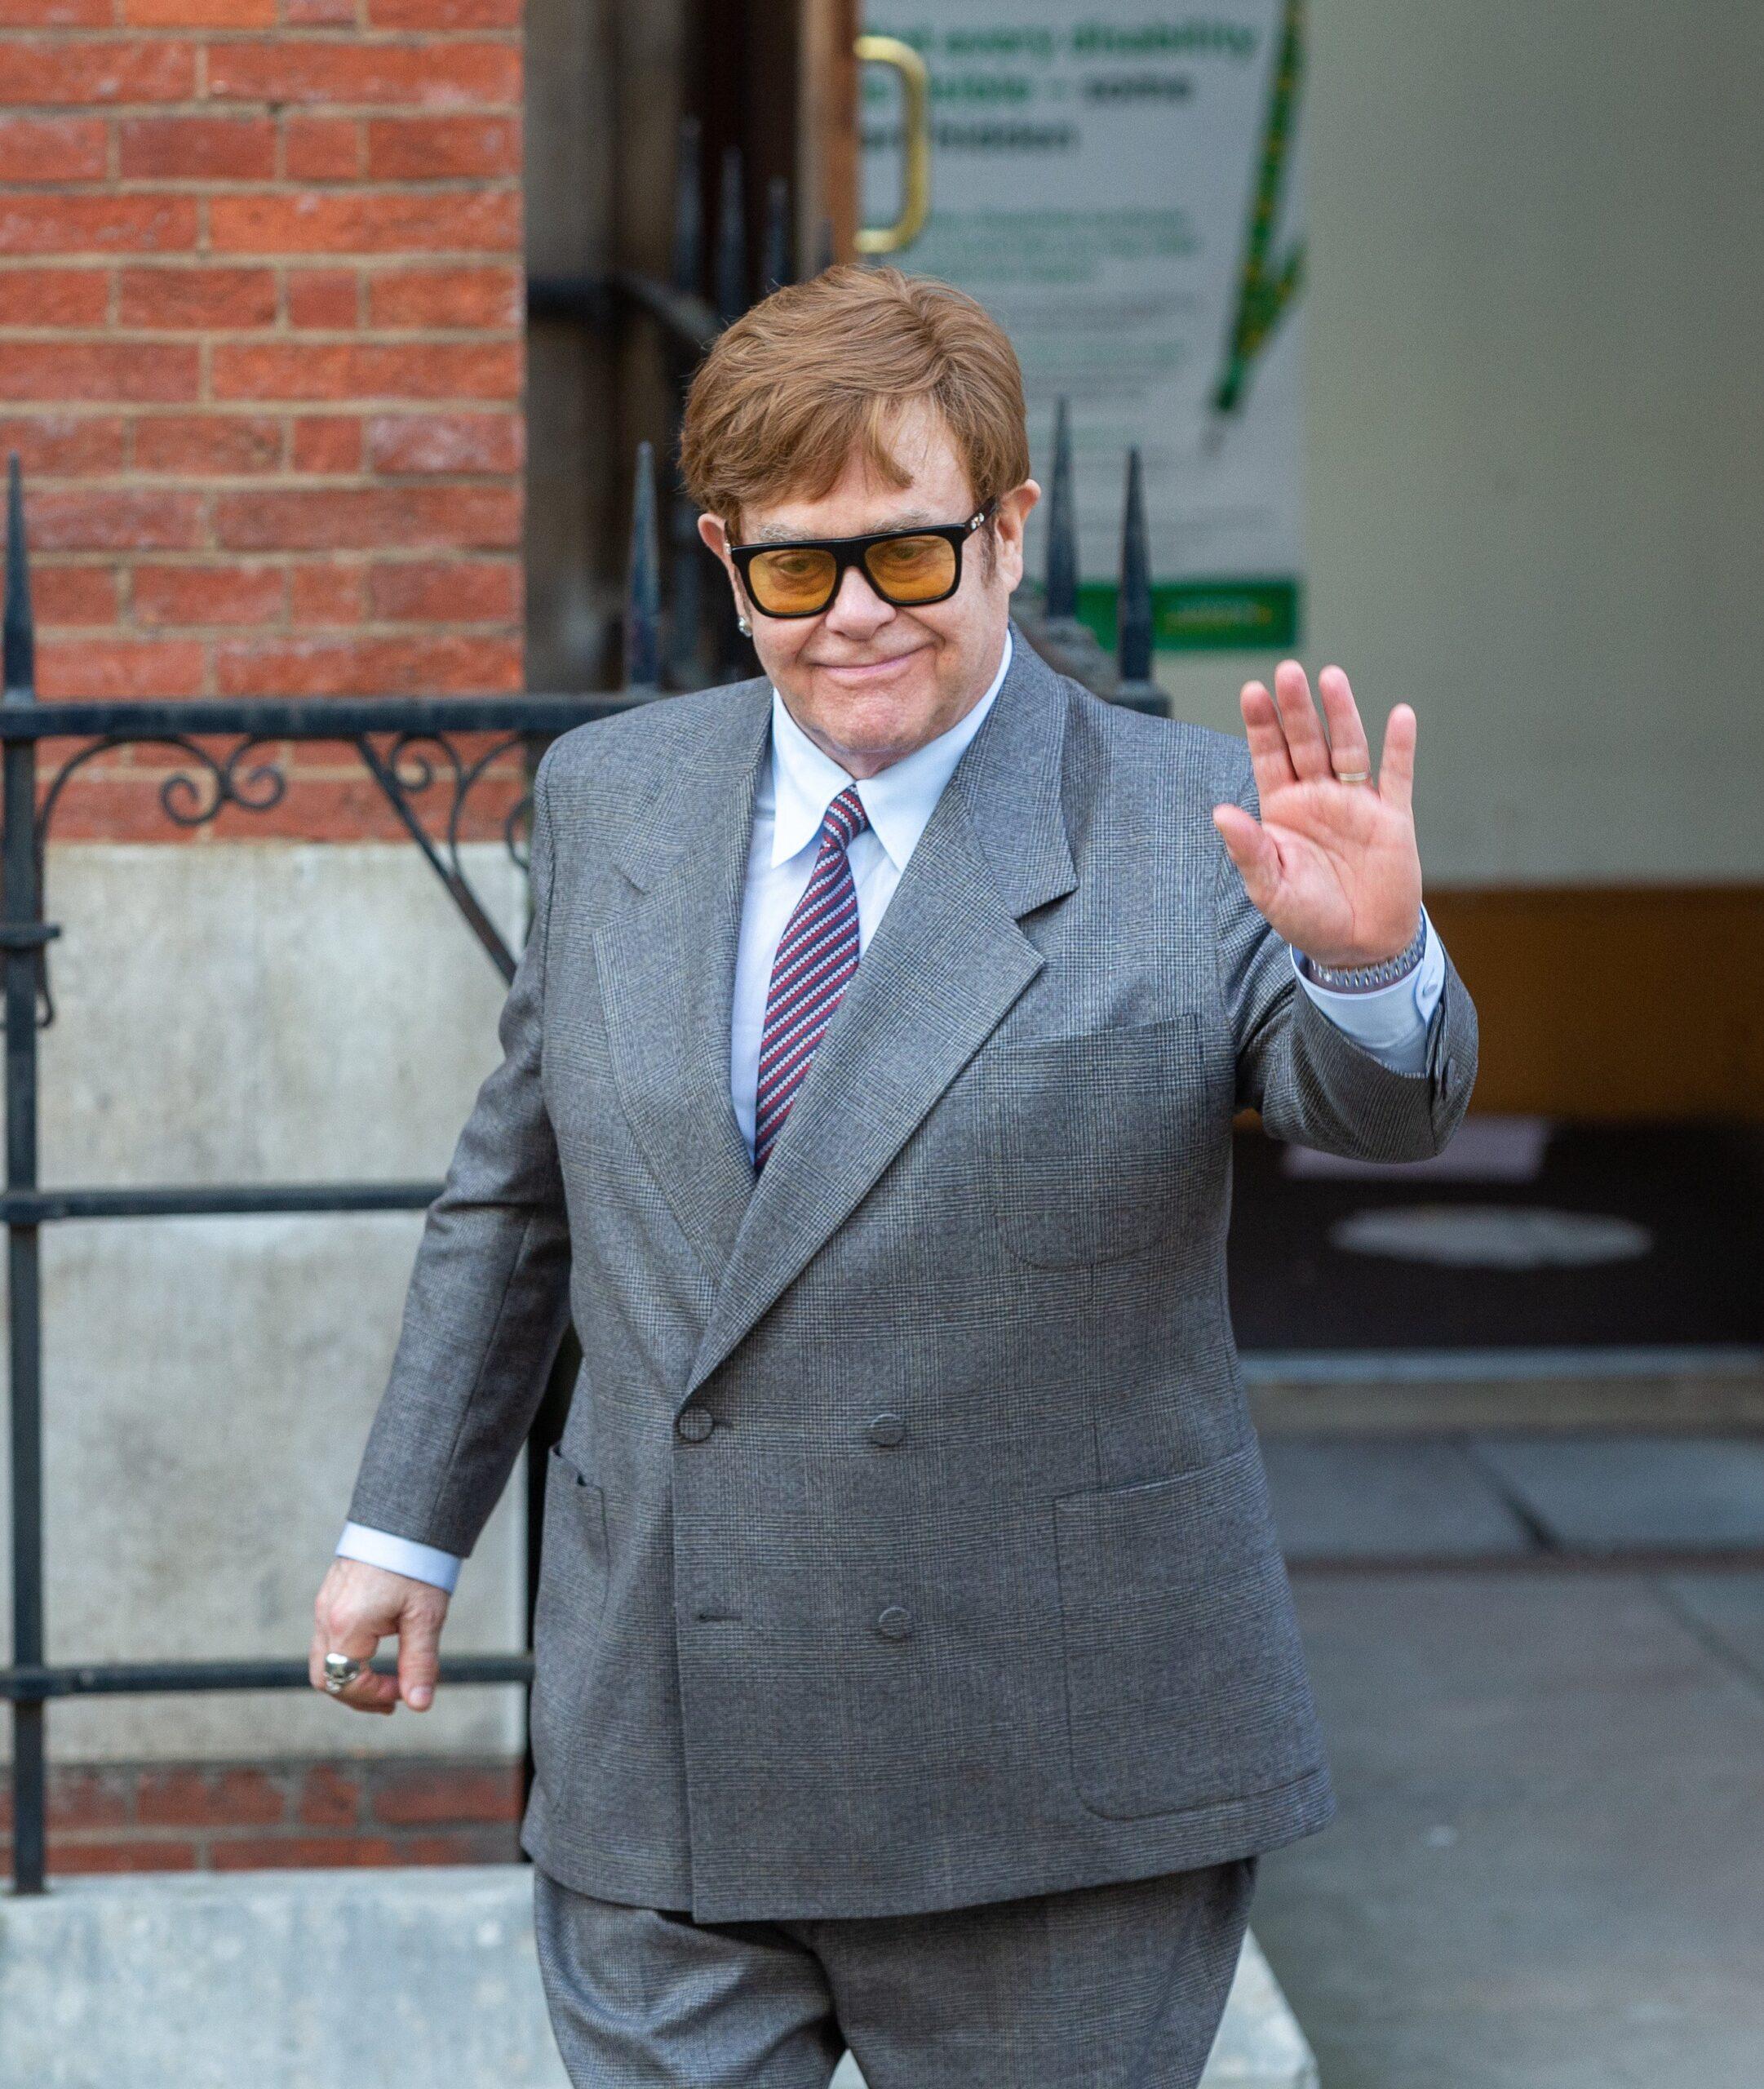 Elton John leaves High Court